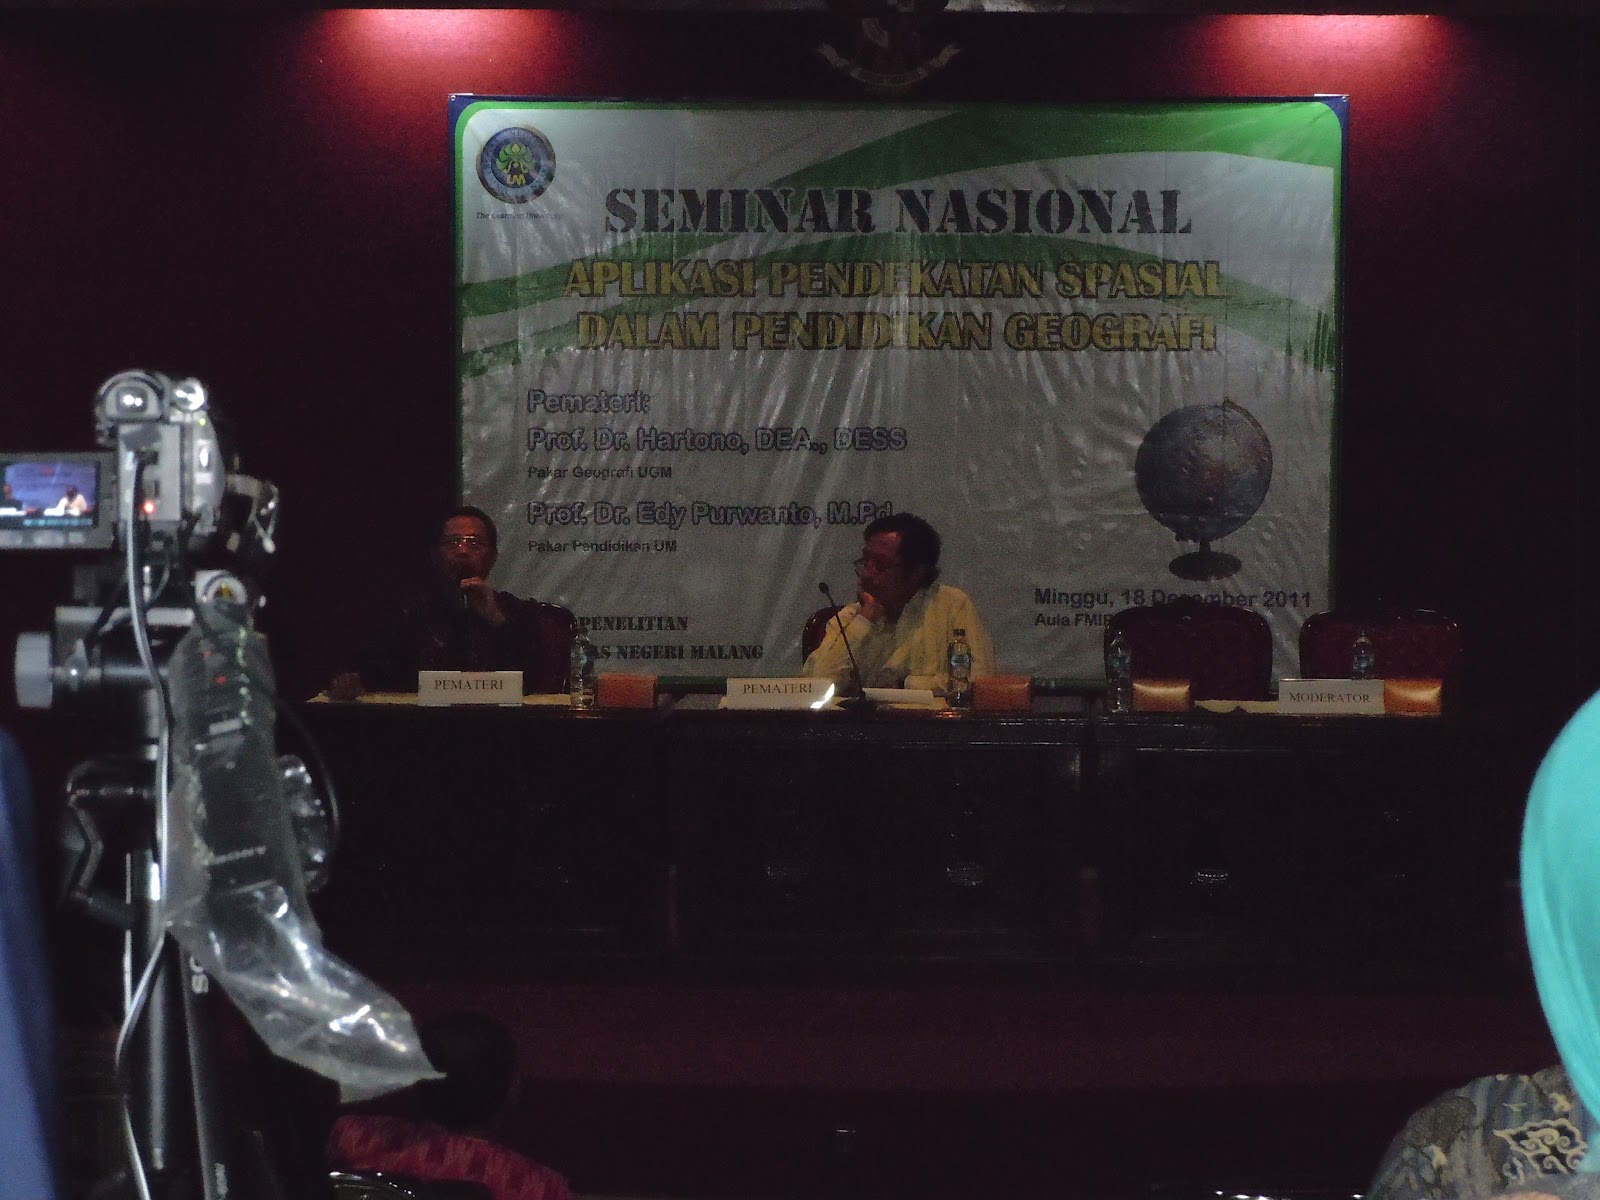 Ahad 18 Desember 2011 lalu Universitas Negeri Malang UM menyelenggarakan seminar nasional dengan tajuk "Aplikasi Pendekatan Spasial dalam Pendidikan